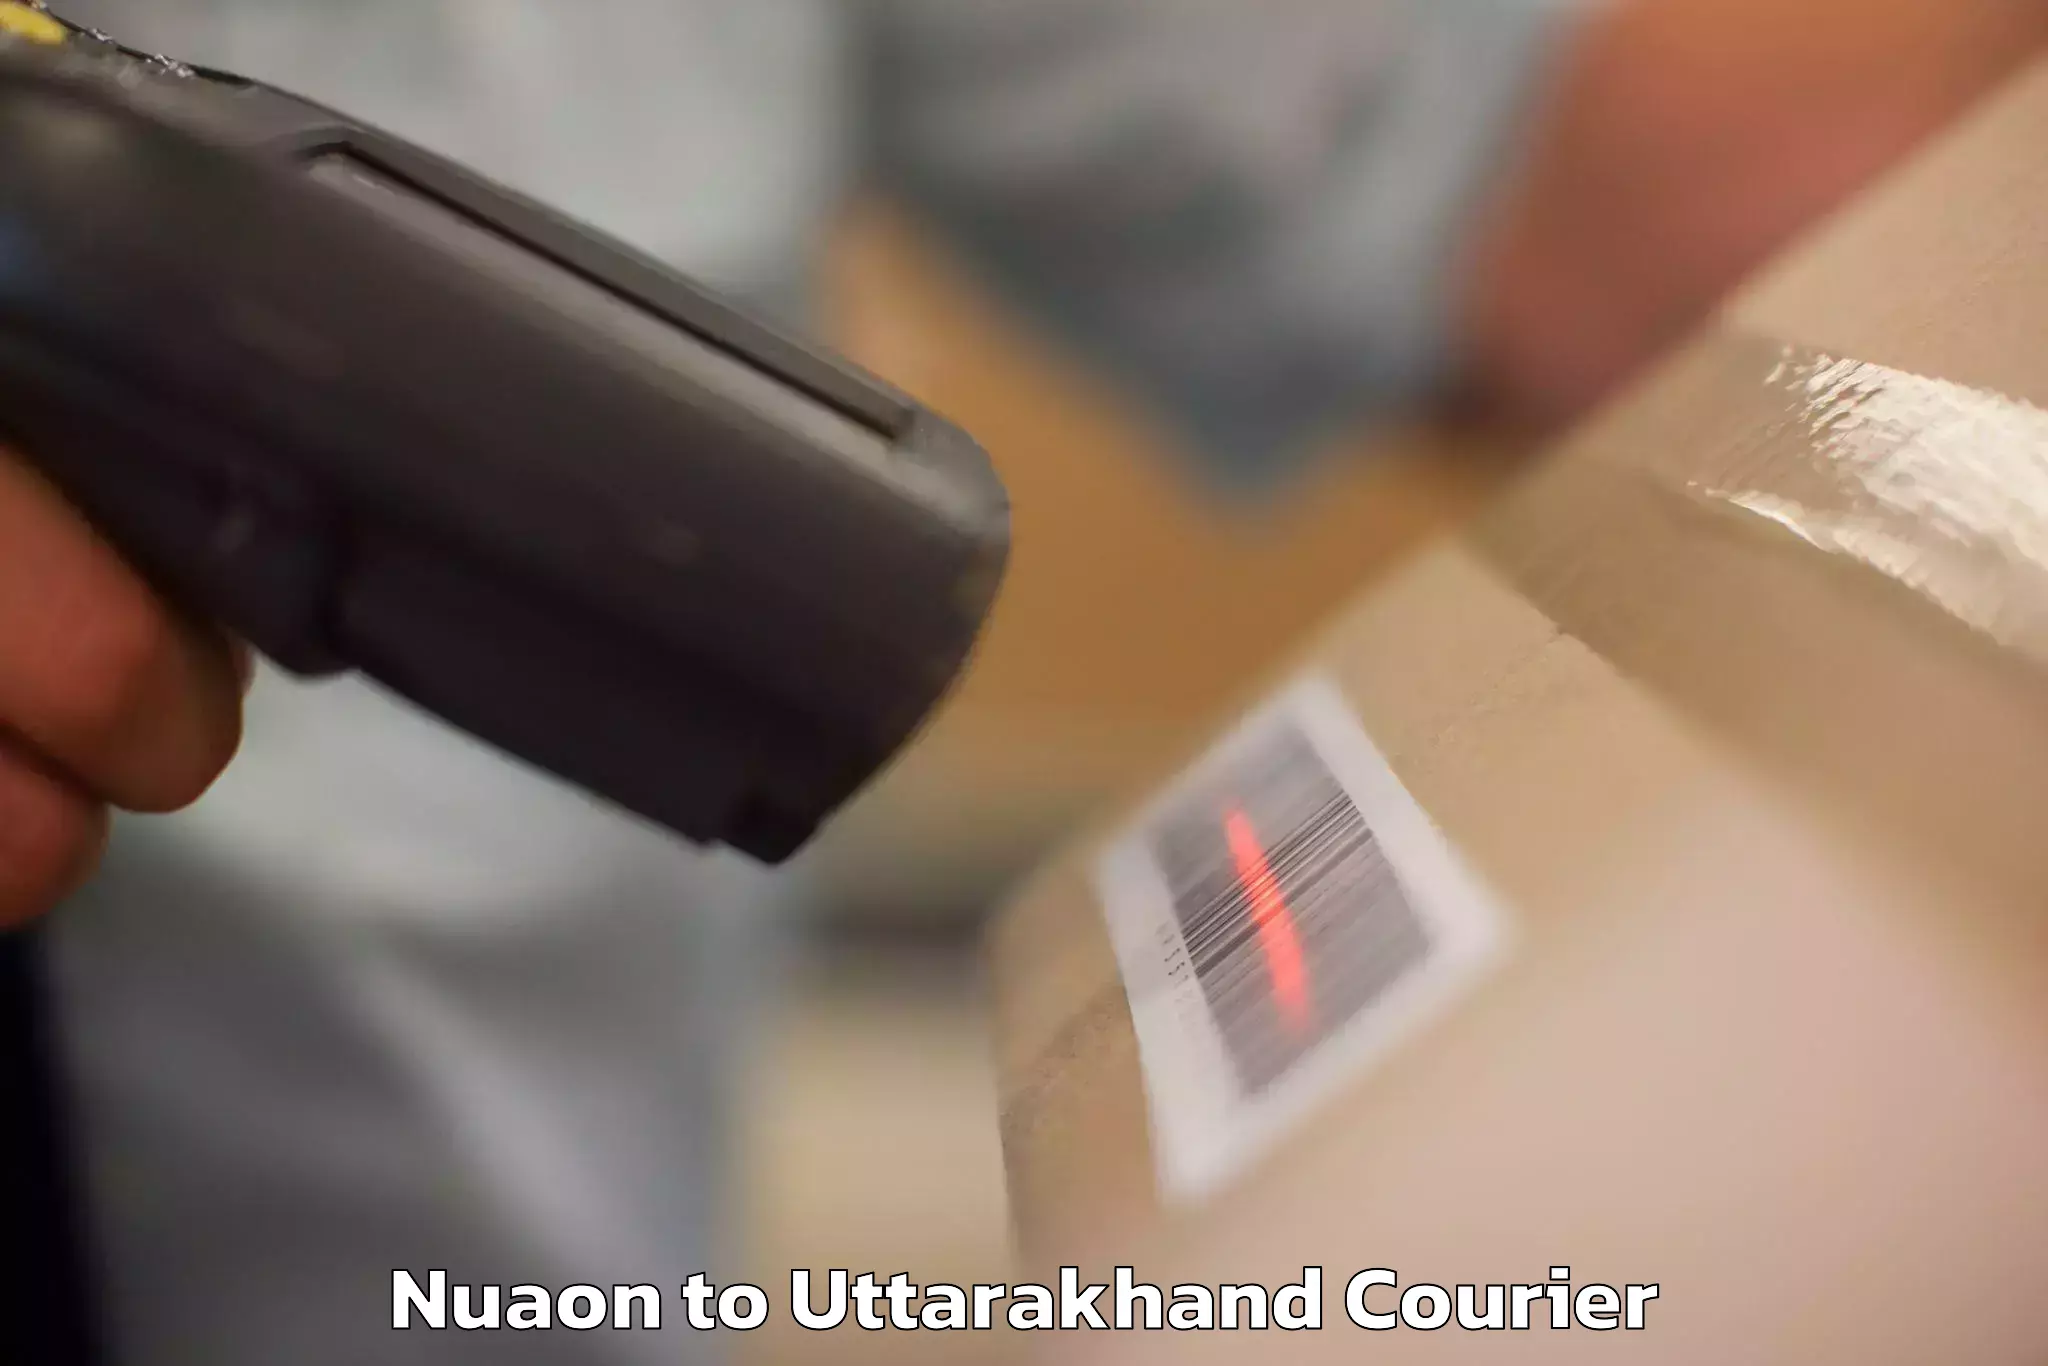 Luggage shipment tracking Nuaon to Uttarakhand